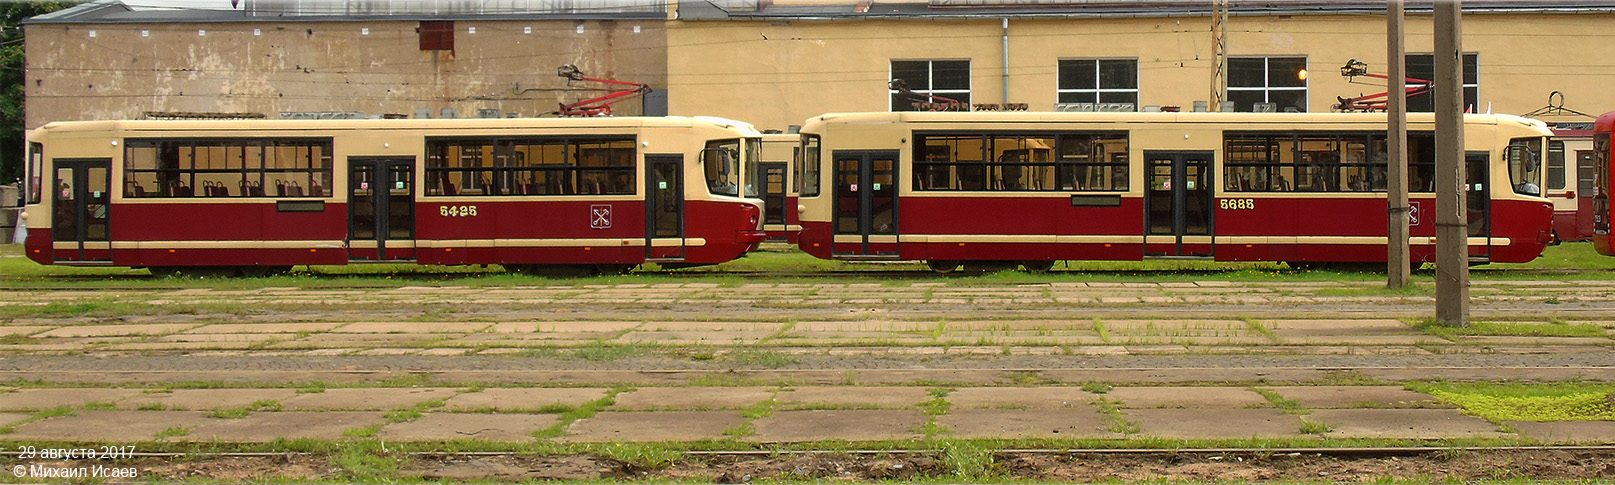 Saint-Pétersbourg, LM-68M2 (mod. SPb GET) N°. 5425; Saint-Pétersbourg — Tramway depot # 7